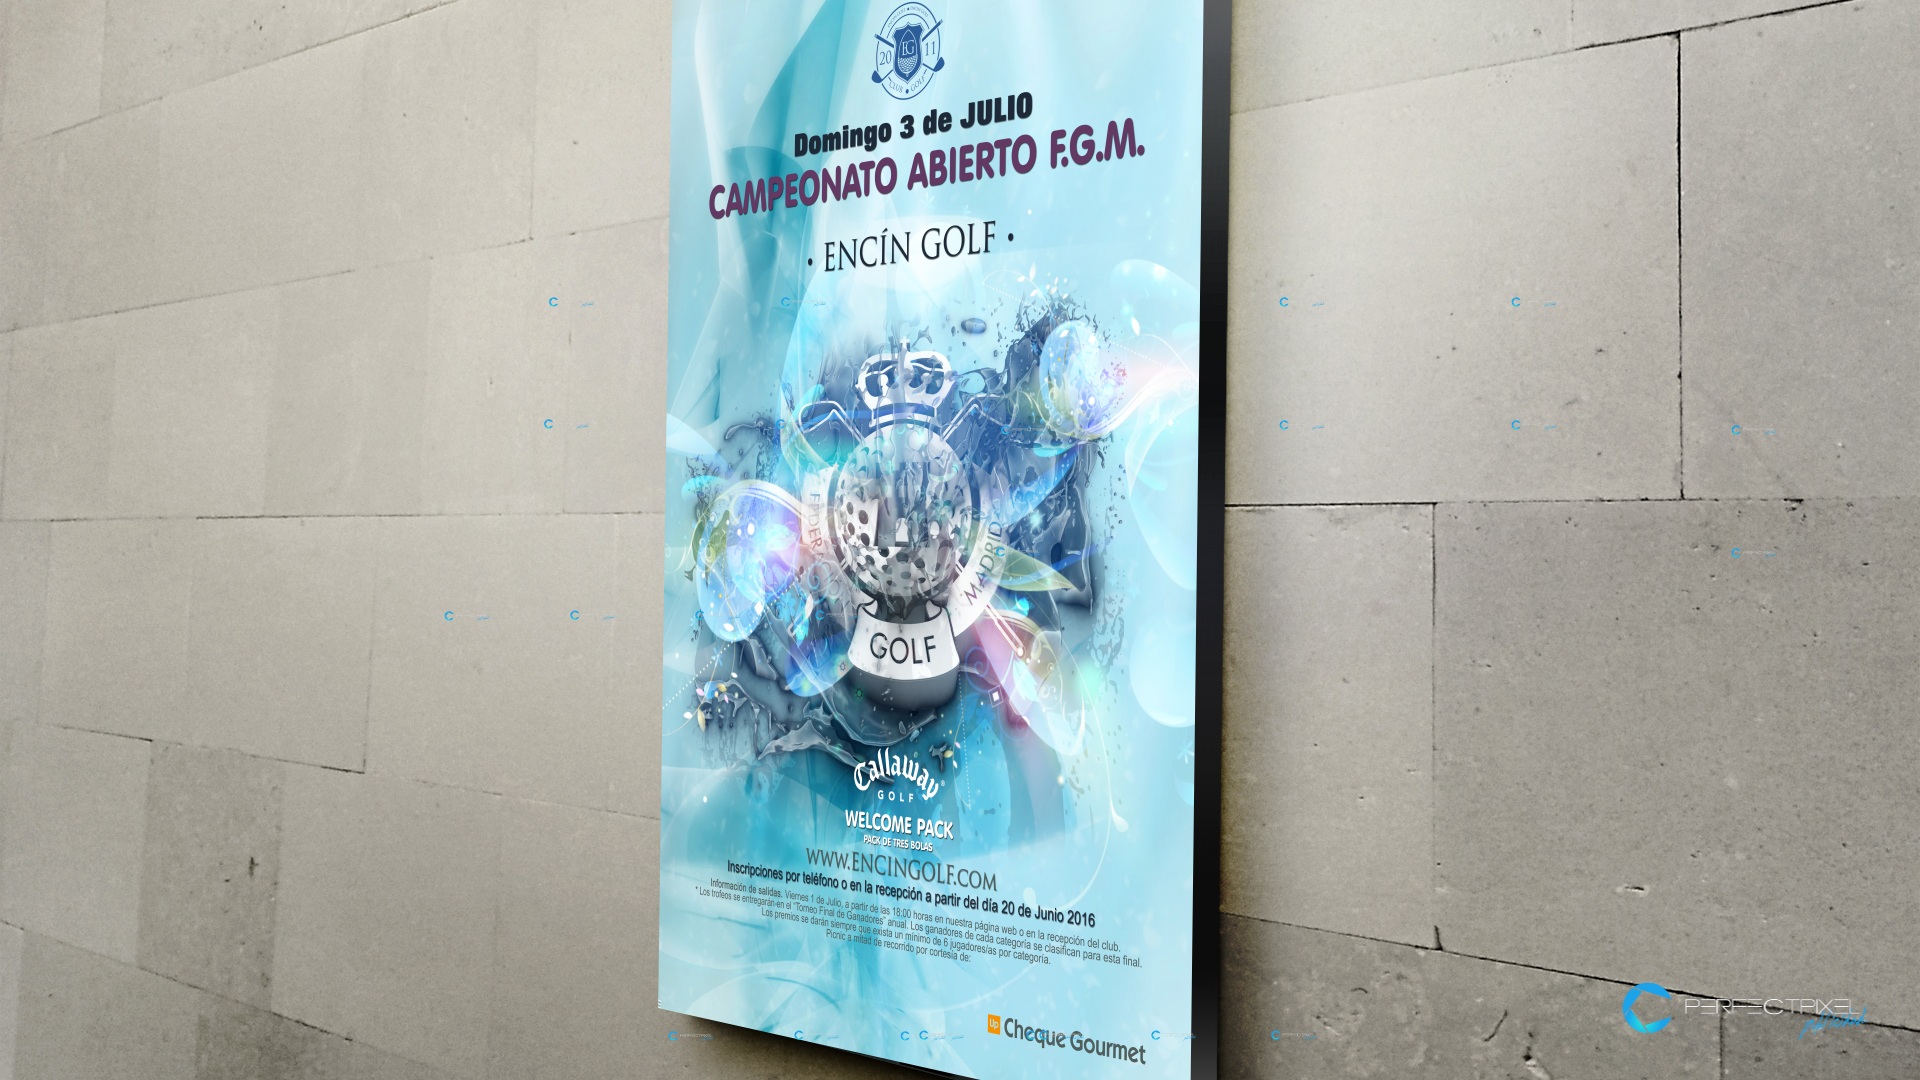 Cartel publicitario campeonato de golf en Madrid - F.G.M. Encín Golf Hotel